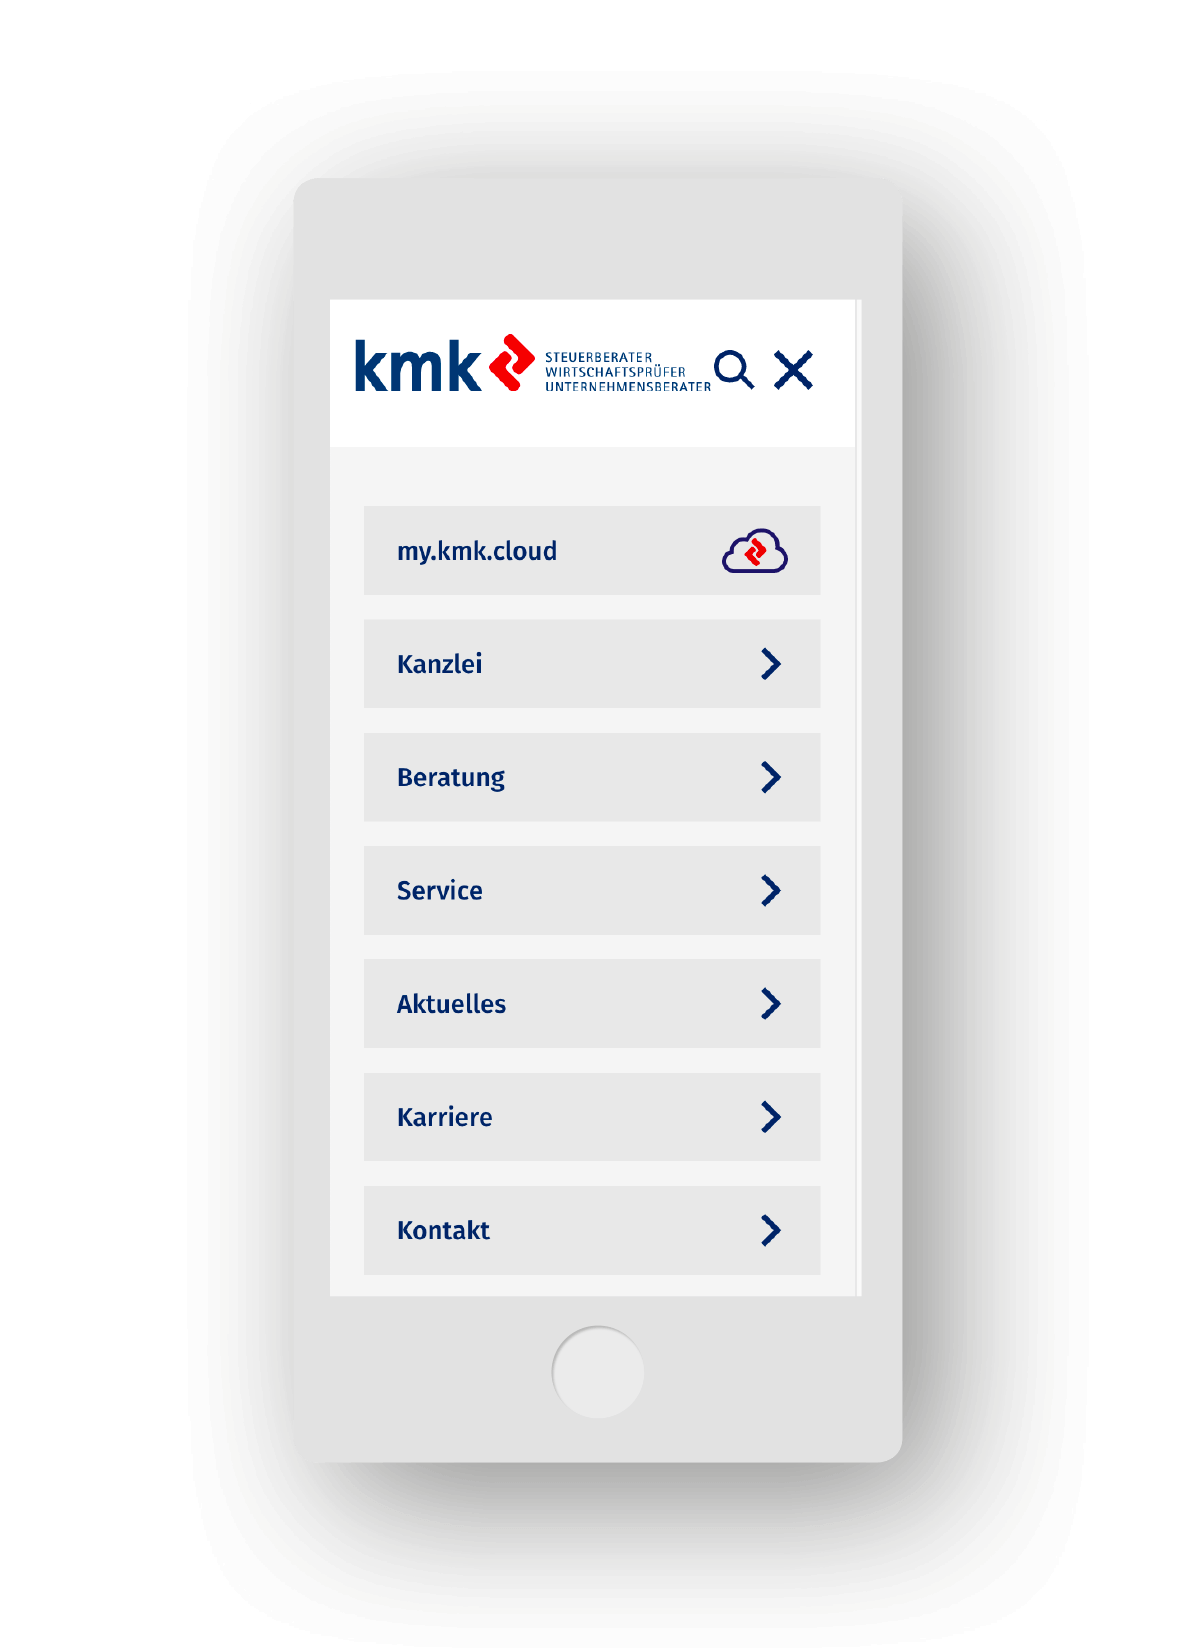 kmk Website Phone